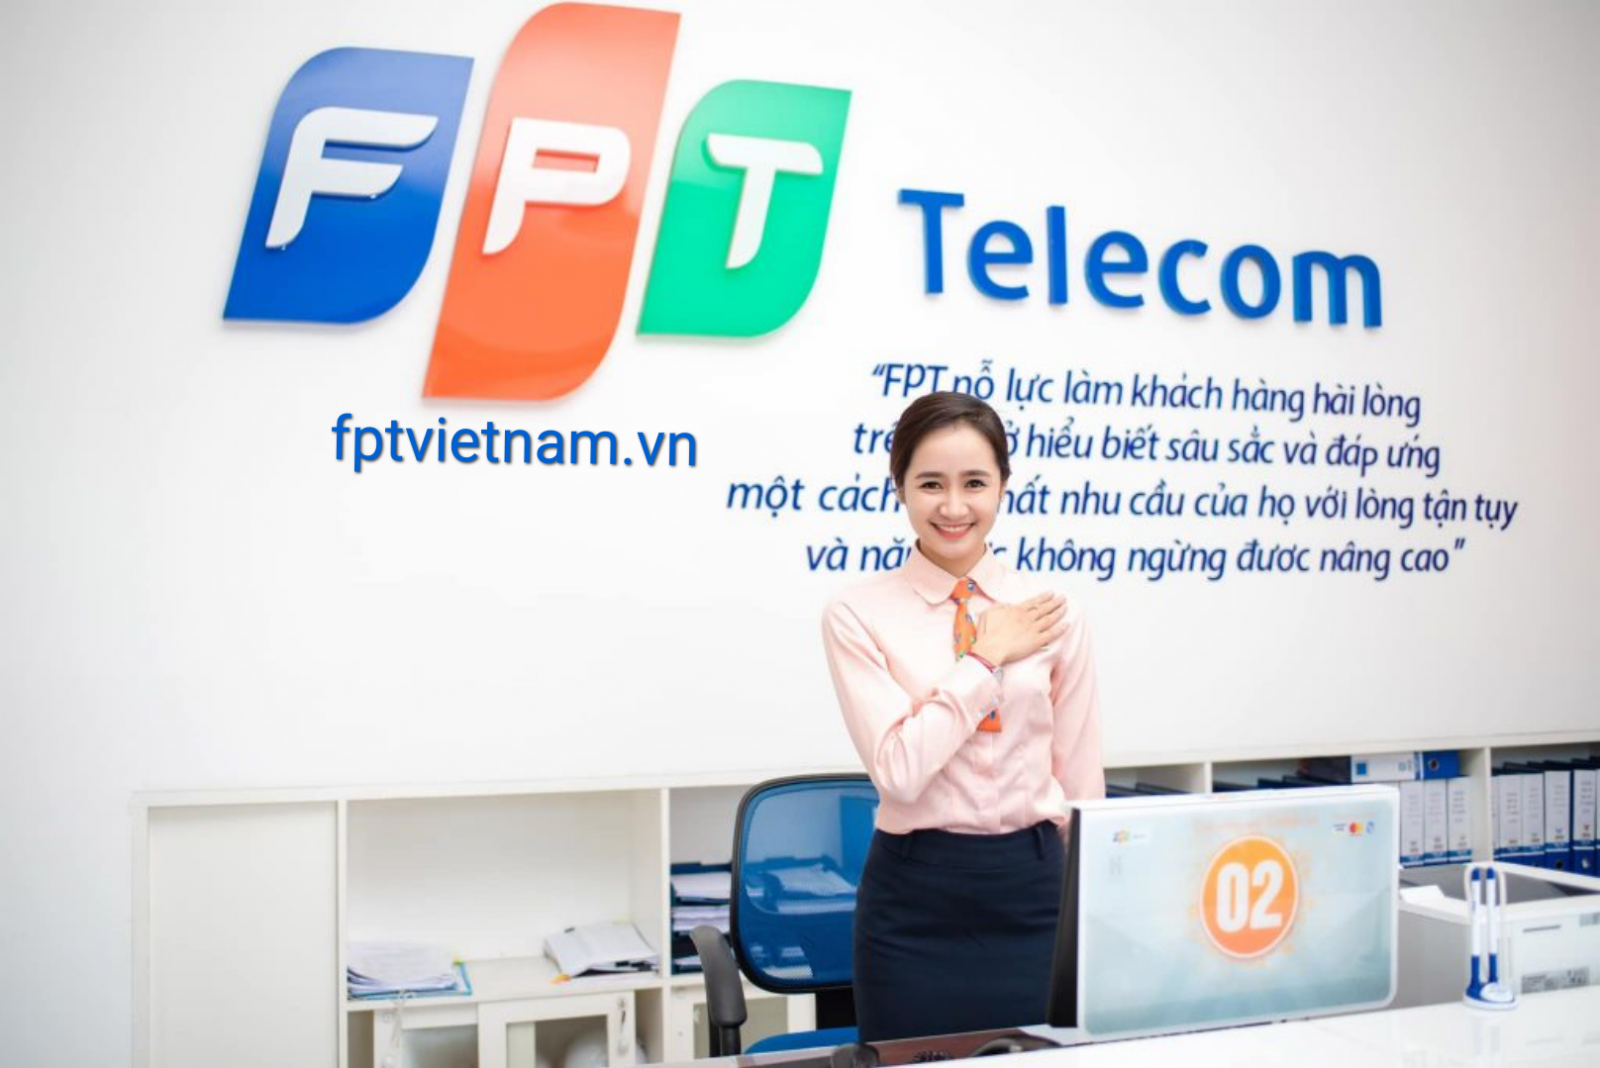 dịch vụ fpt telecom Bình Dương